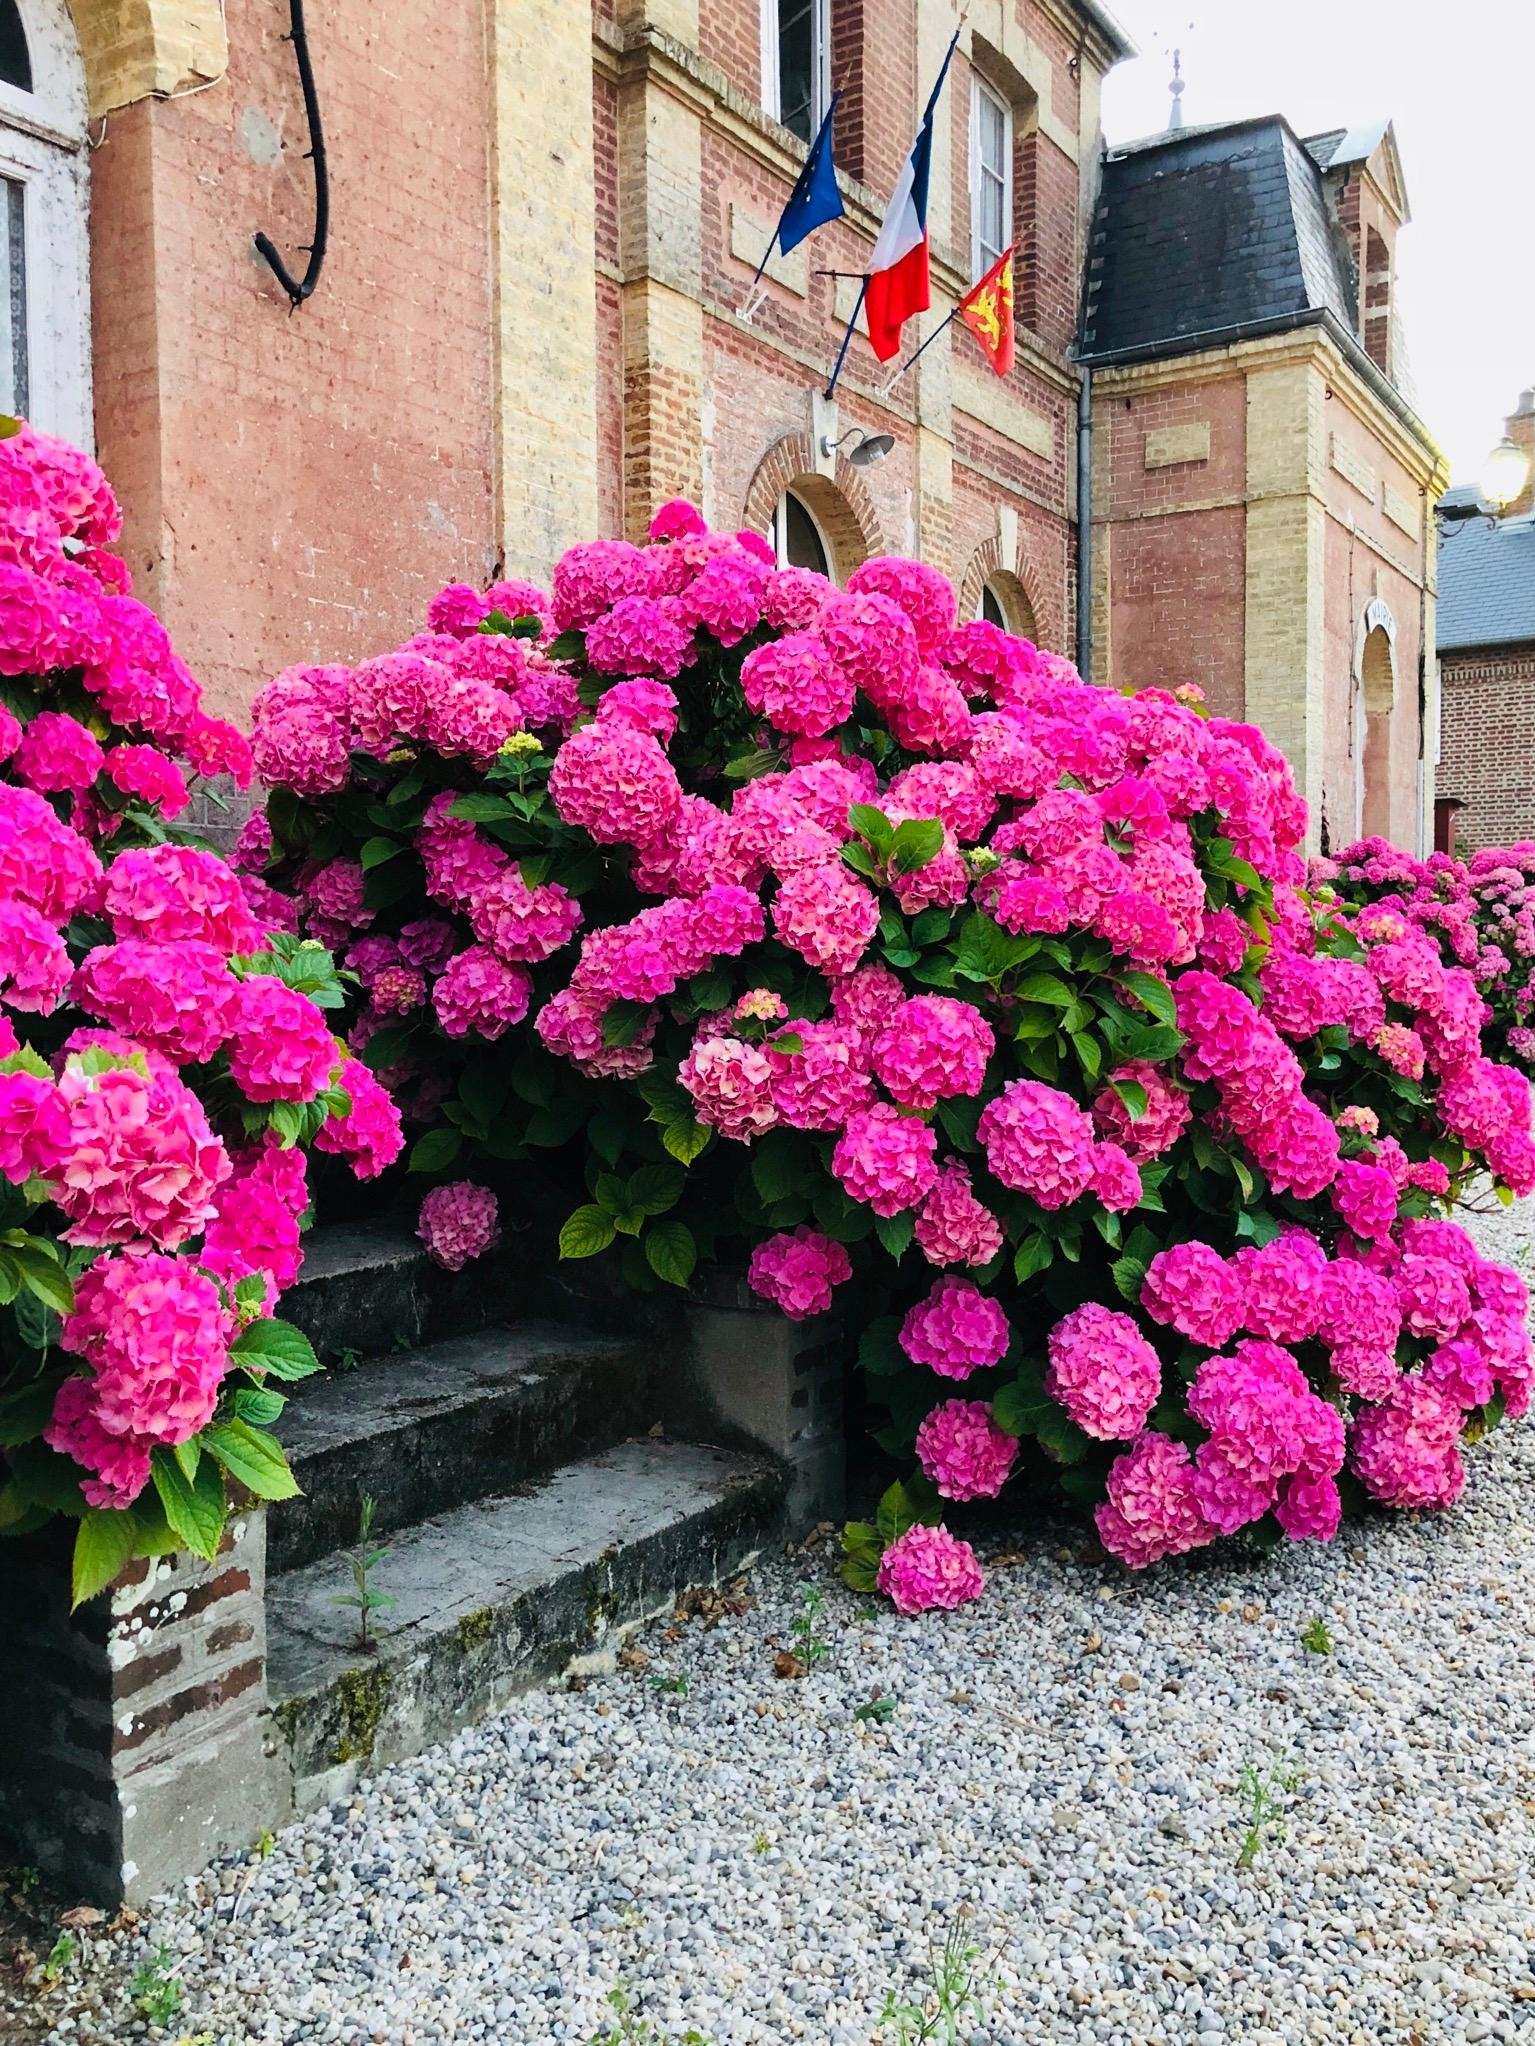 Diese schönen Hortensien muss ich einfach mit euch teilen 💕 #urlaub #hortensien #pink #blumen #frankreich #blumenliebe